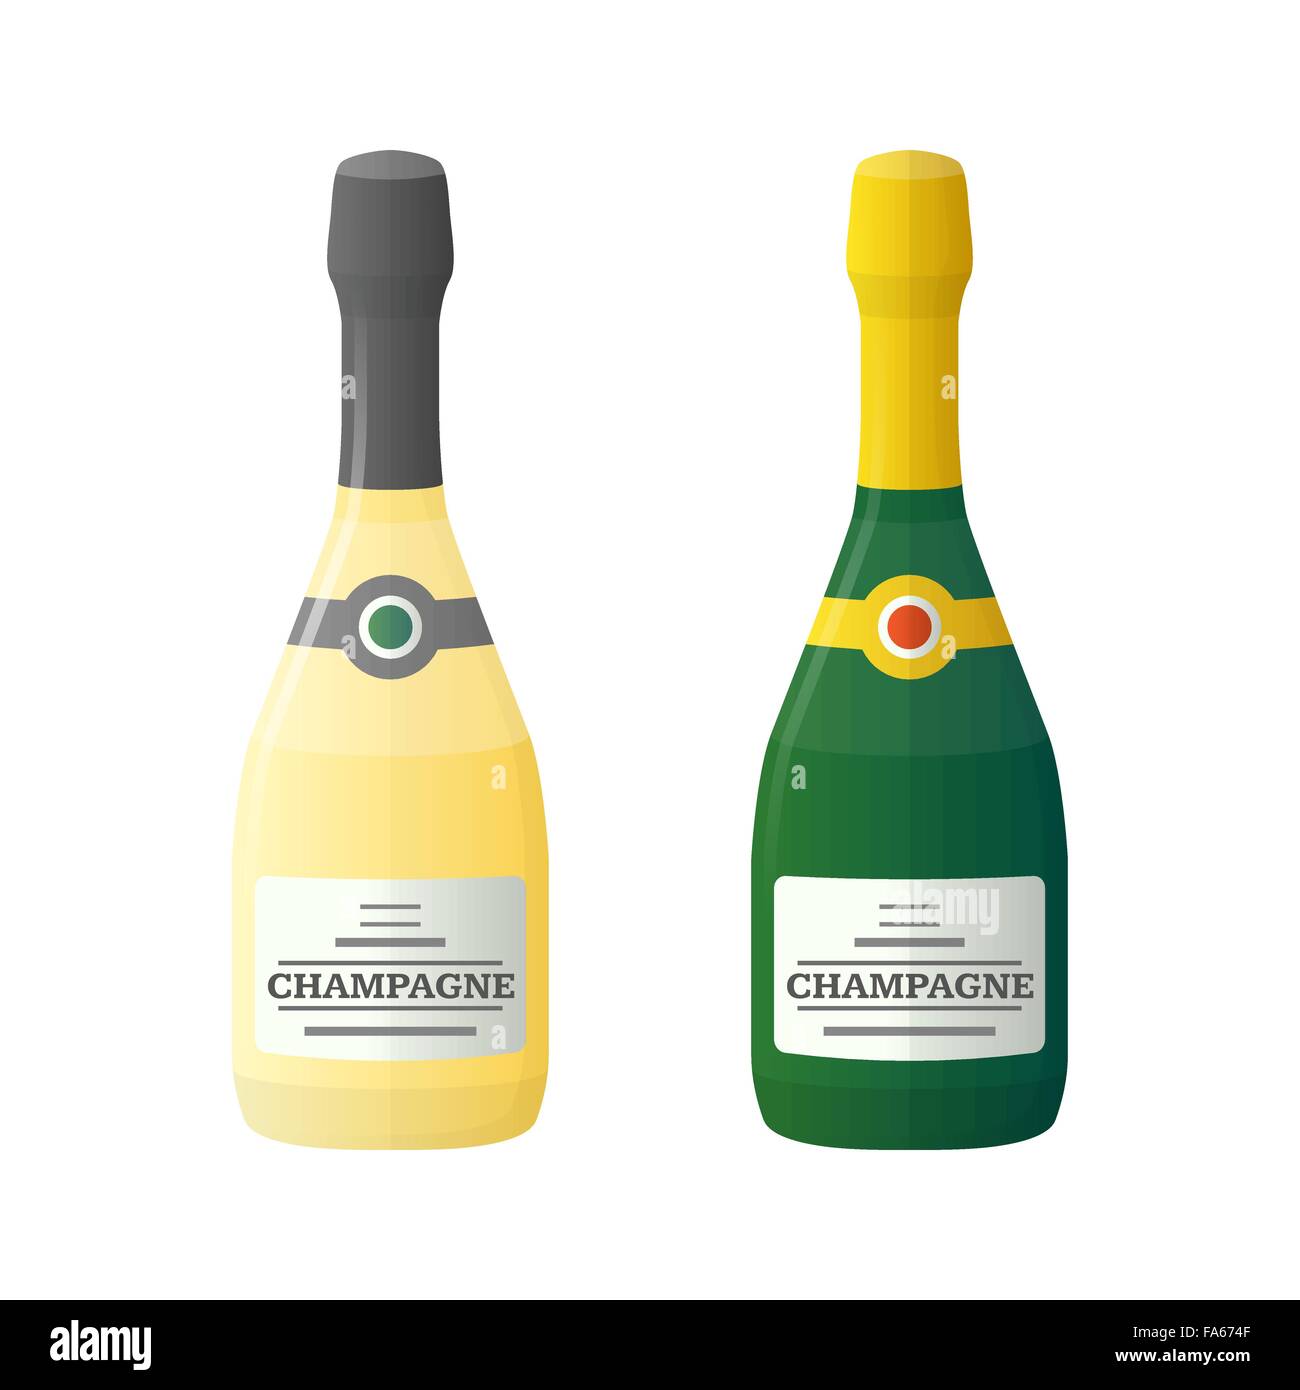 vector color flat design light dark champagne bottles isolated illustration on white background Stock Vector